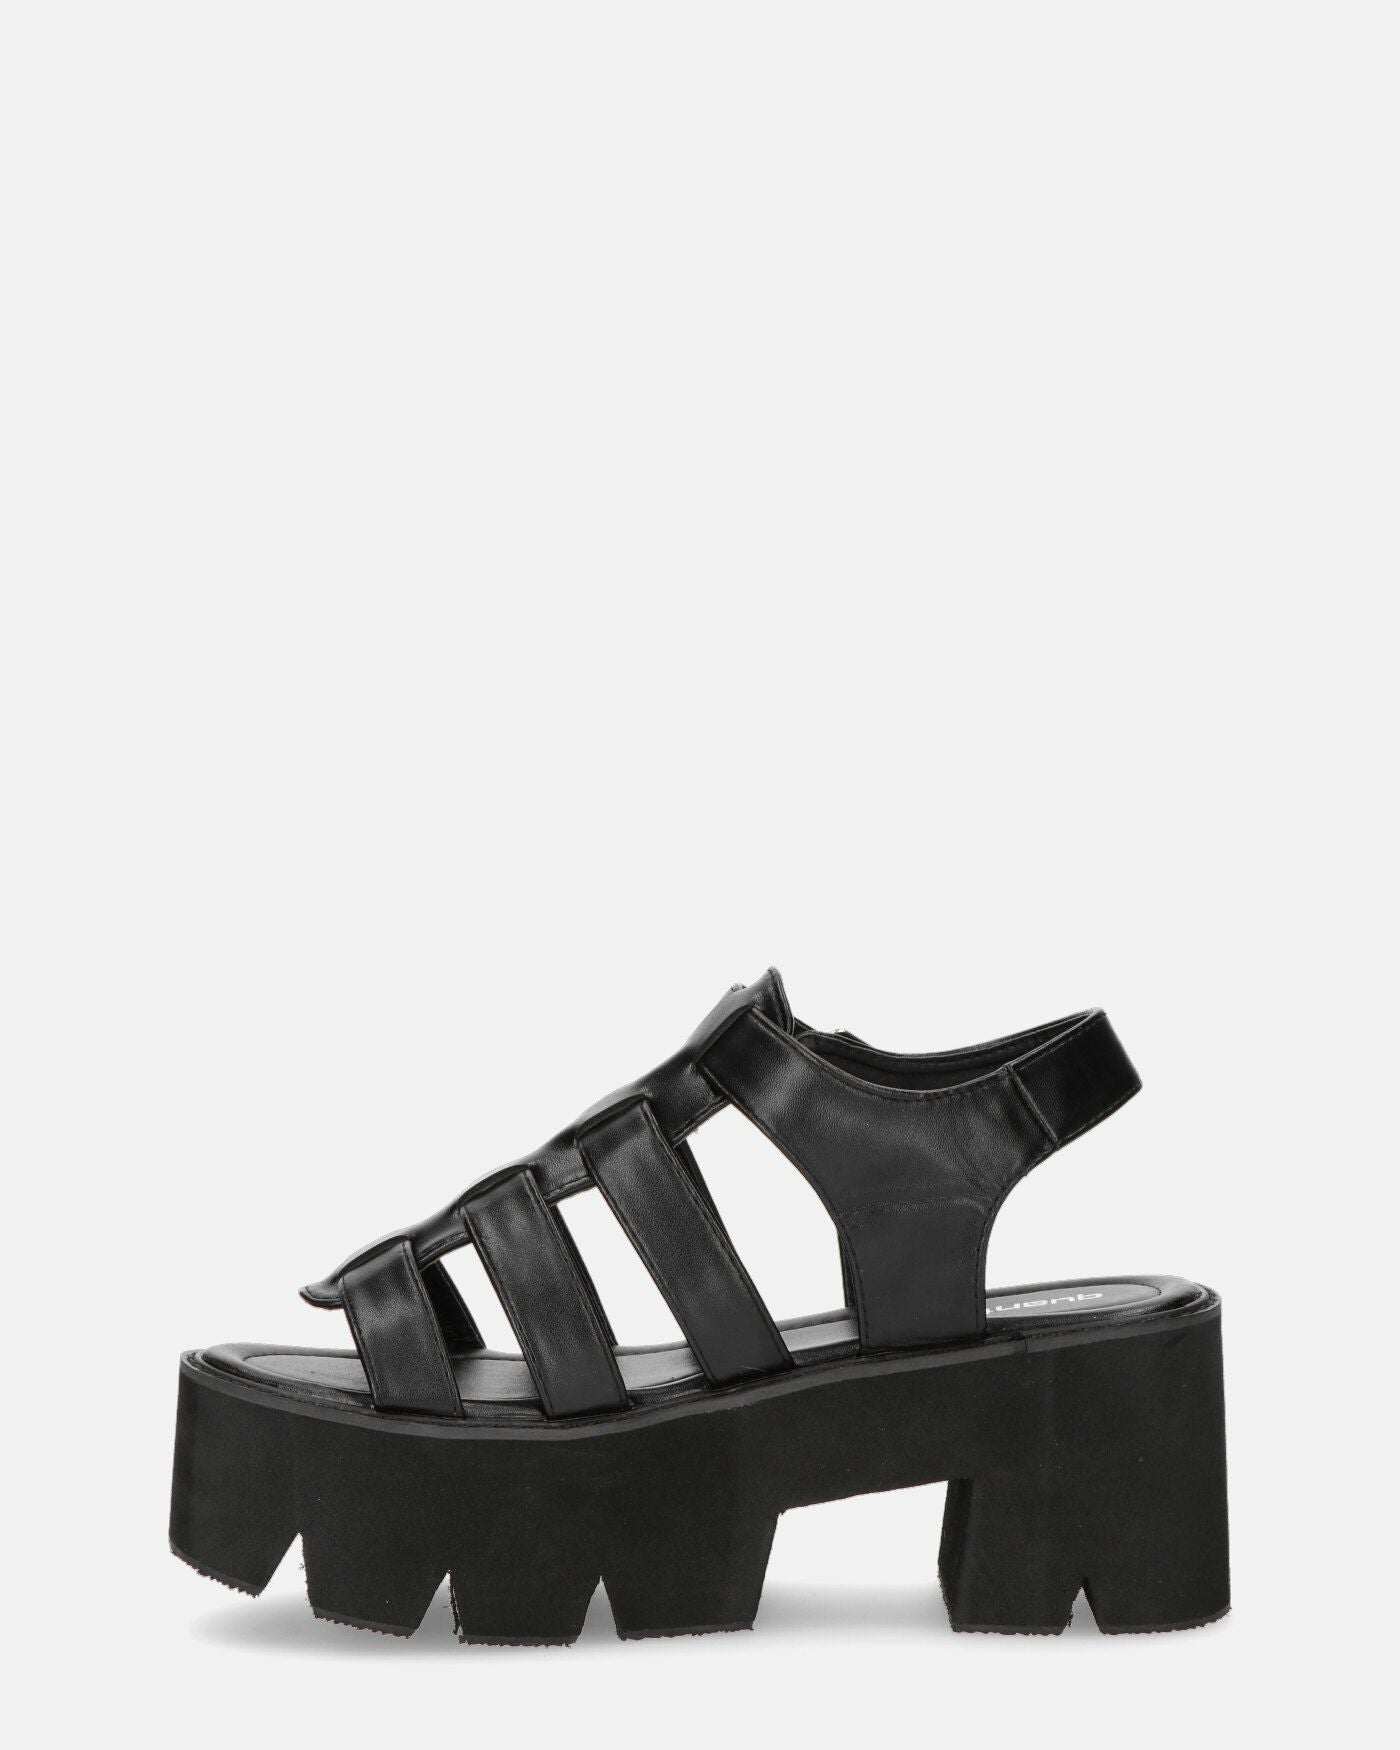 SHERLIE - platform cleated sandals in black